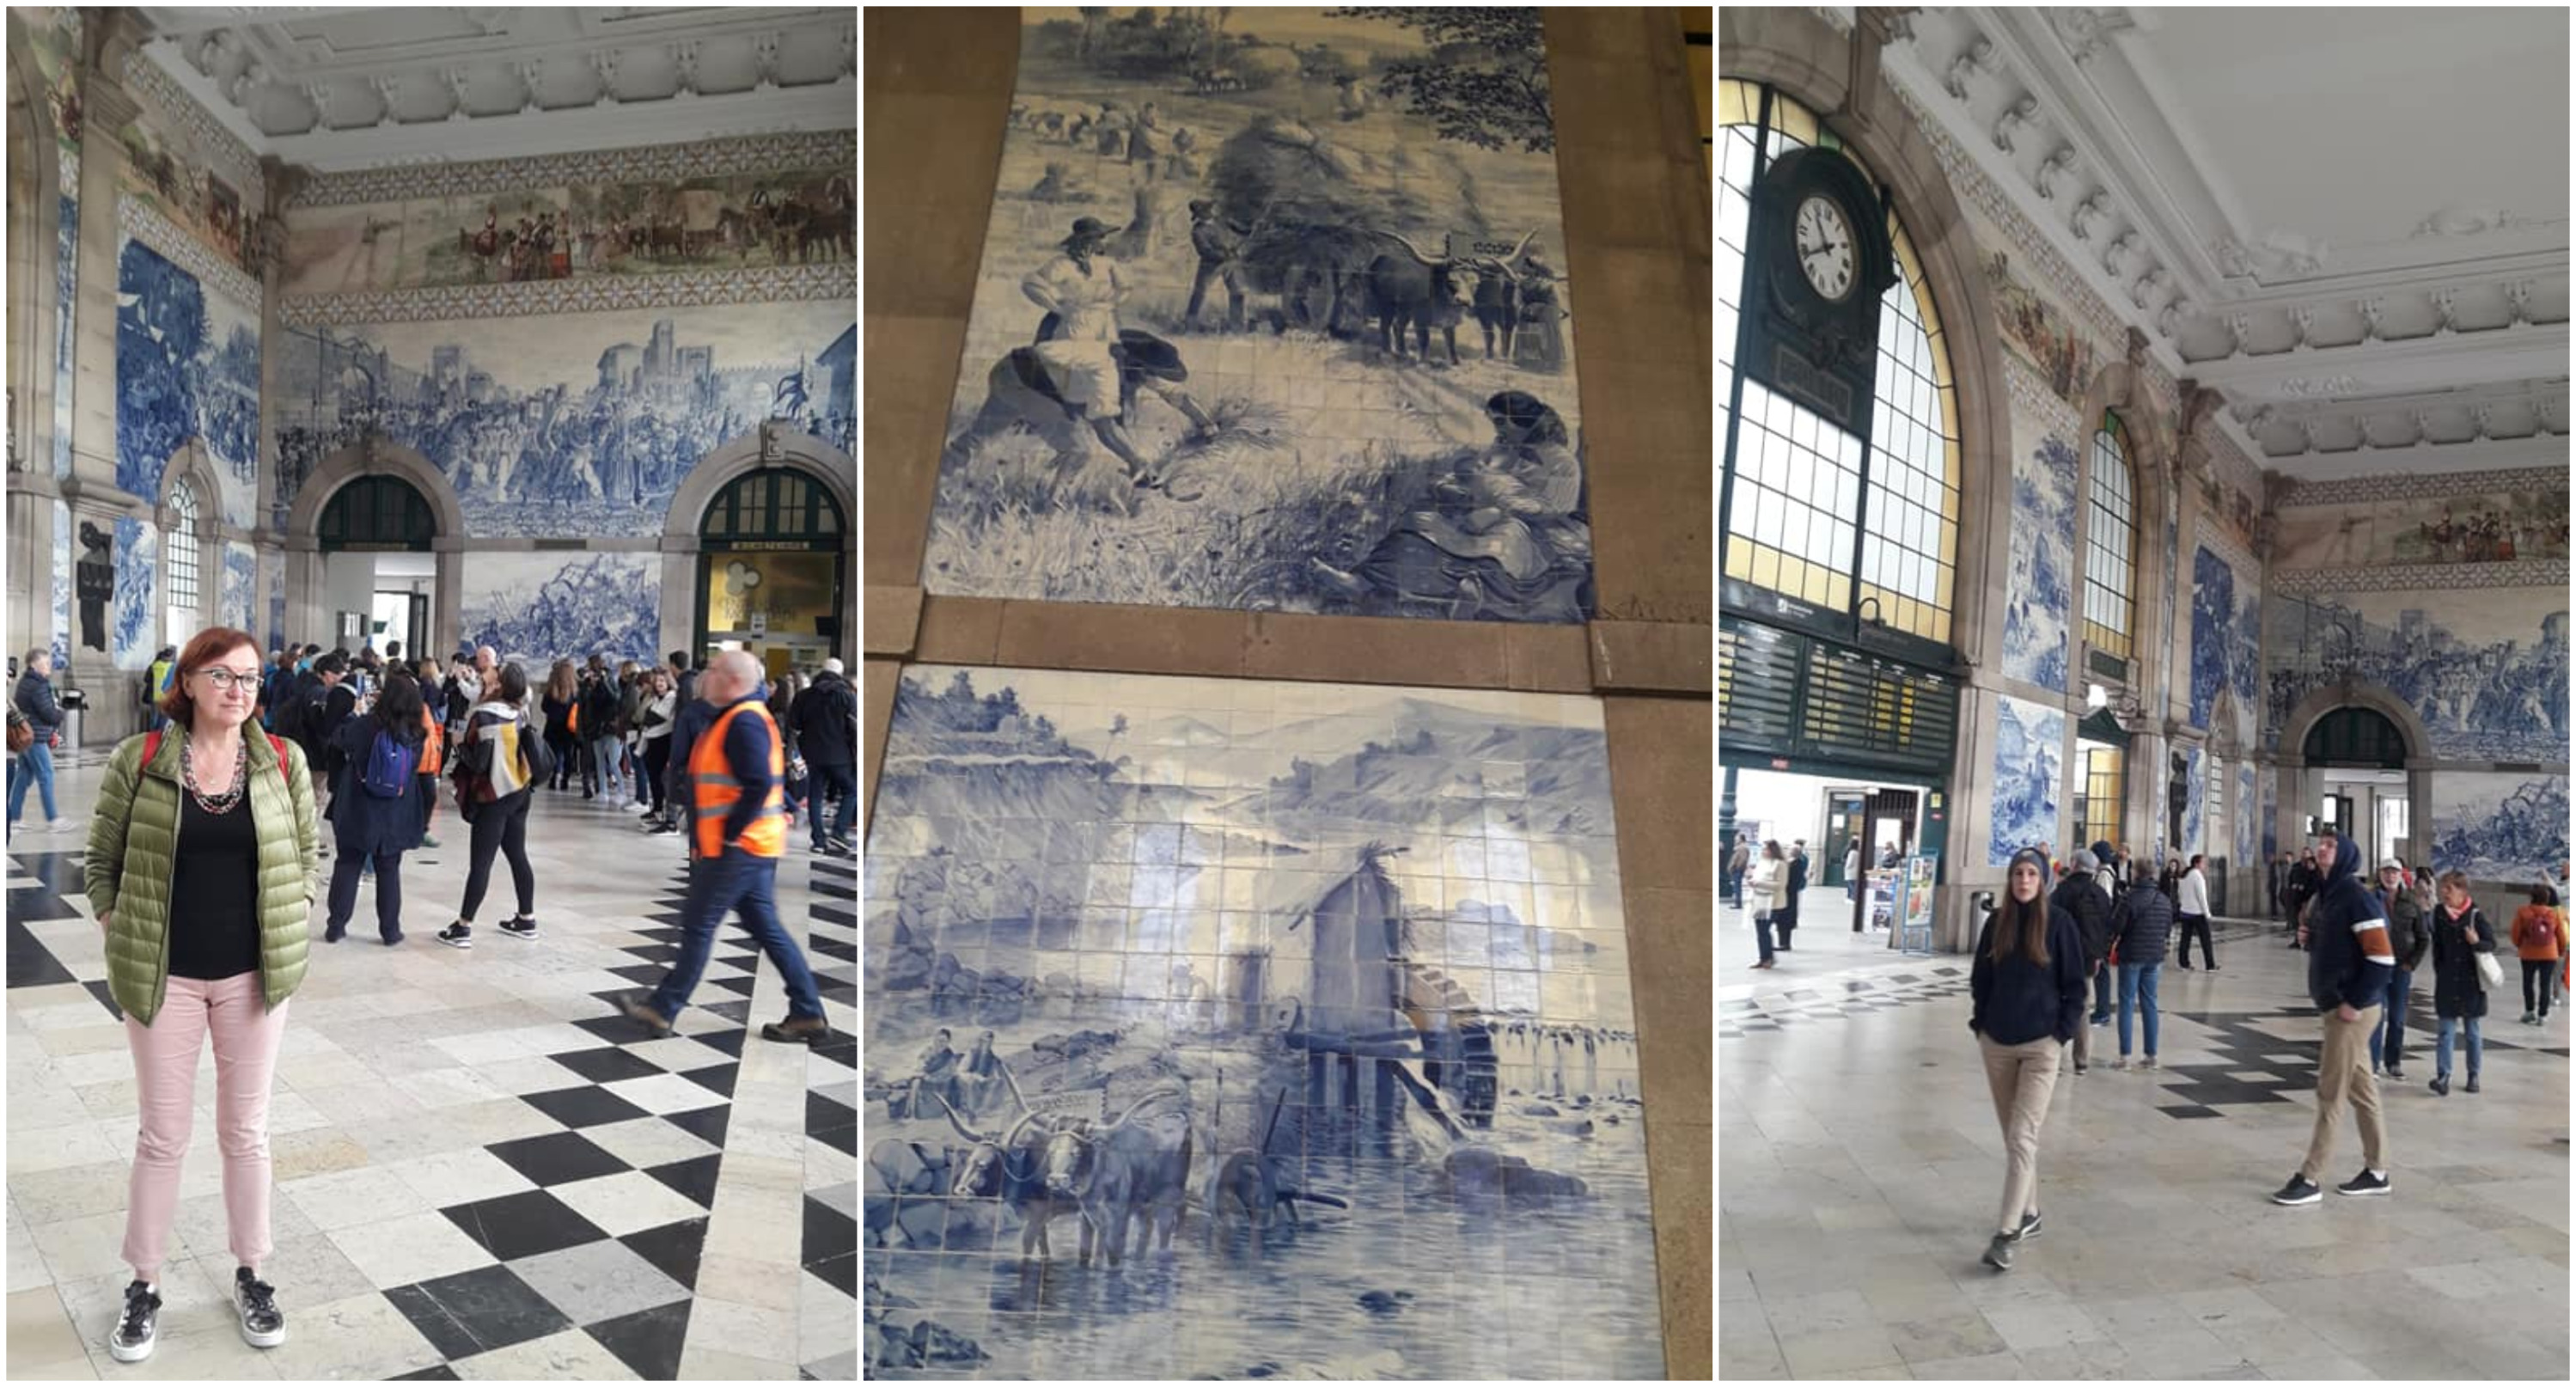 Ж/д вокзал Порту считается одним из самых красивых старинных вокзалов мира. Его стены покрывают более 20 тысяч чудесных бело-голубых плиточек. Они изображают сцены строительства железных дорог, крестьянский быт и, вероятно, картины из истории Португалии